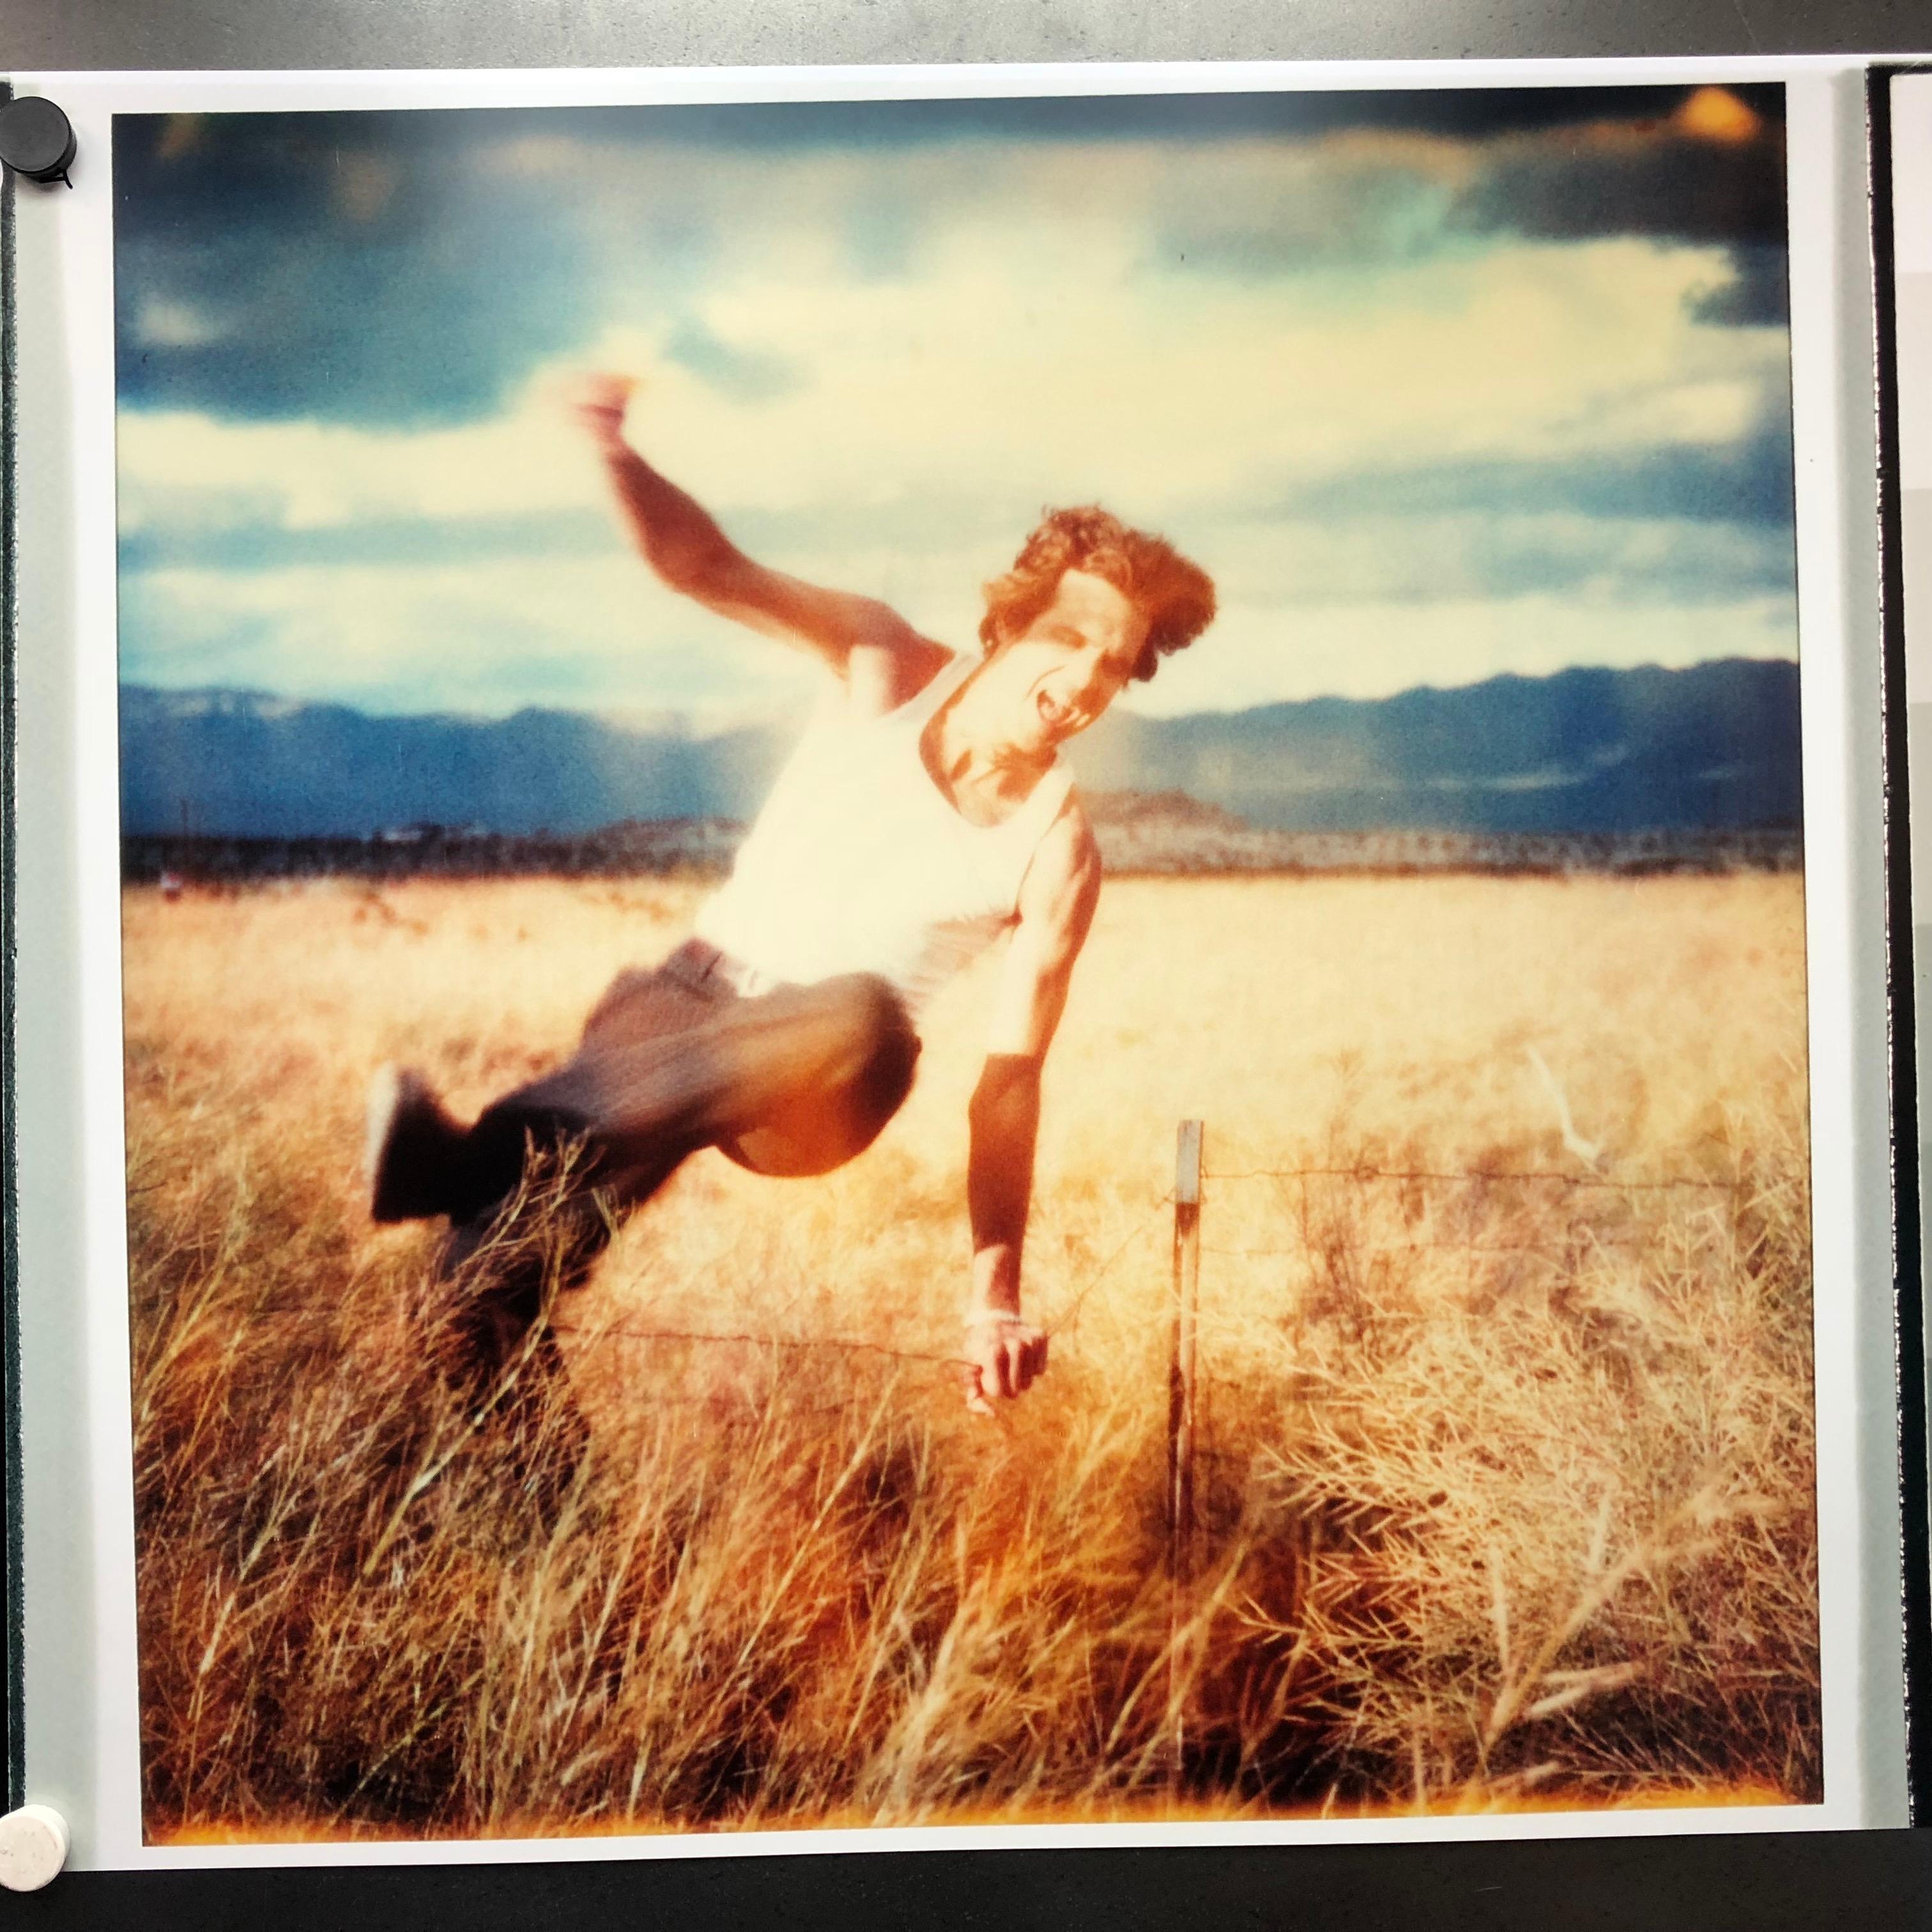 Stefanie Schneider Landscape Photograph - Field of Dreams (Sidewinder), analog, 80x78cm, Edition 2/5